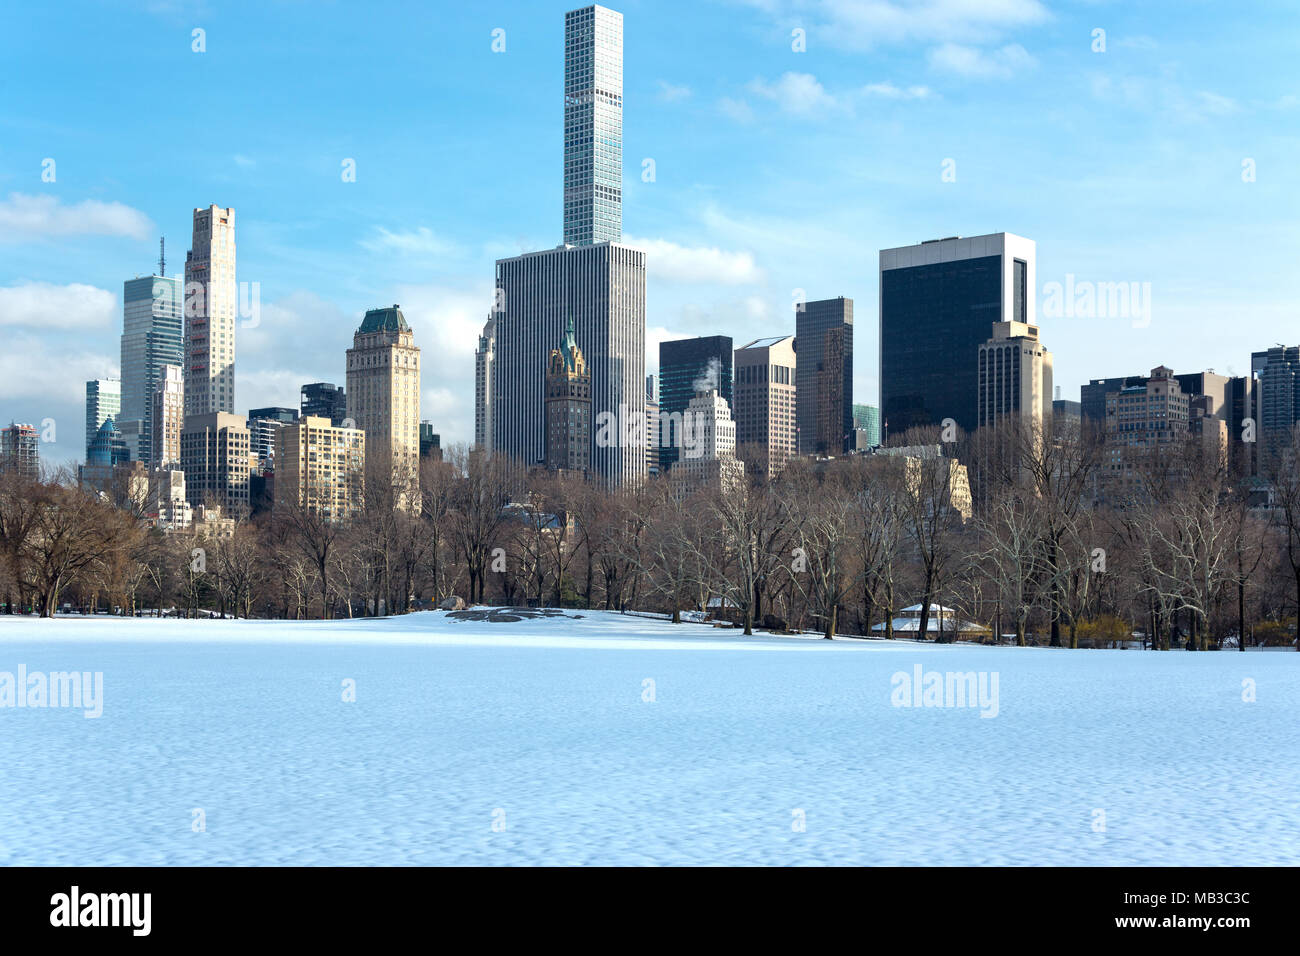 Schnee bedeckt schafe wiese CENTRAL PARK SOUTH die Skyline von MIDTOWN MANHATTAN NEW YORK CITY USA Stockfoto